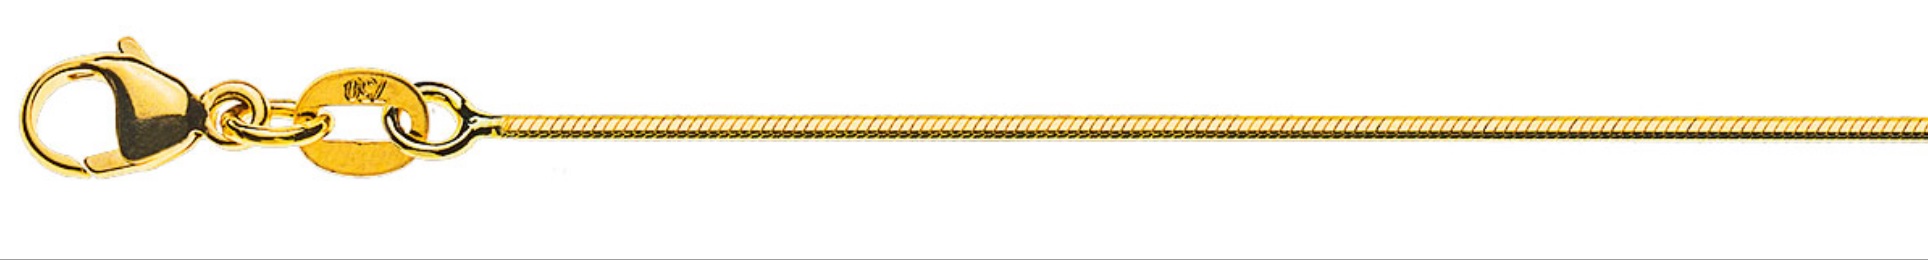 AURONOS Prestige Collier en or jaune 18K serpent diamanté 50cm 1.0mm